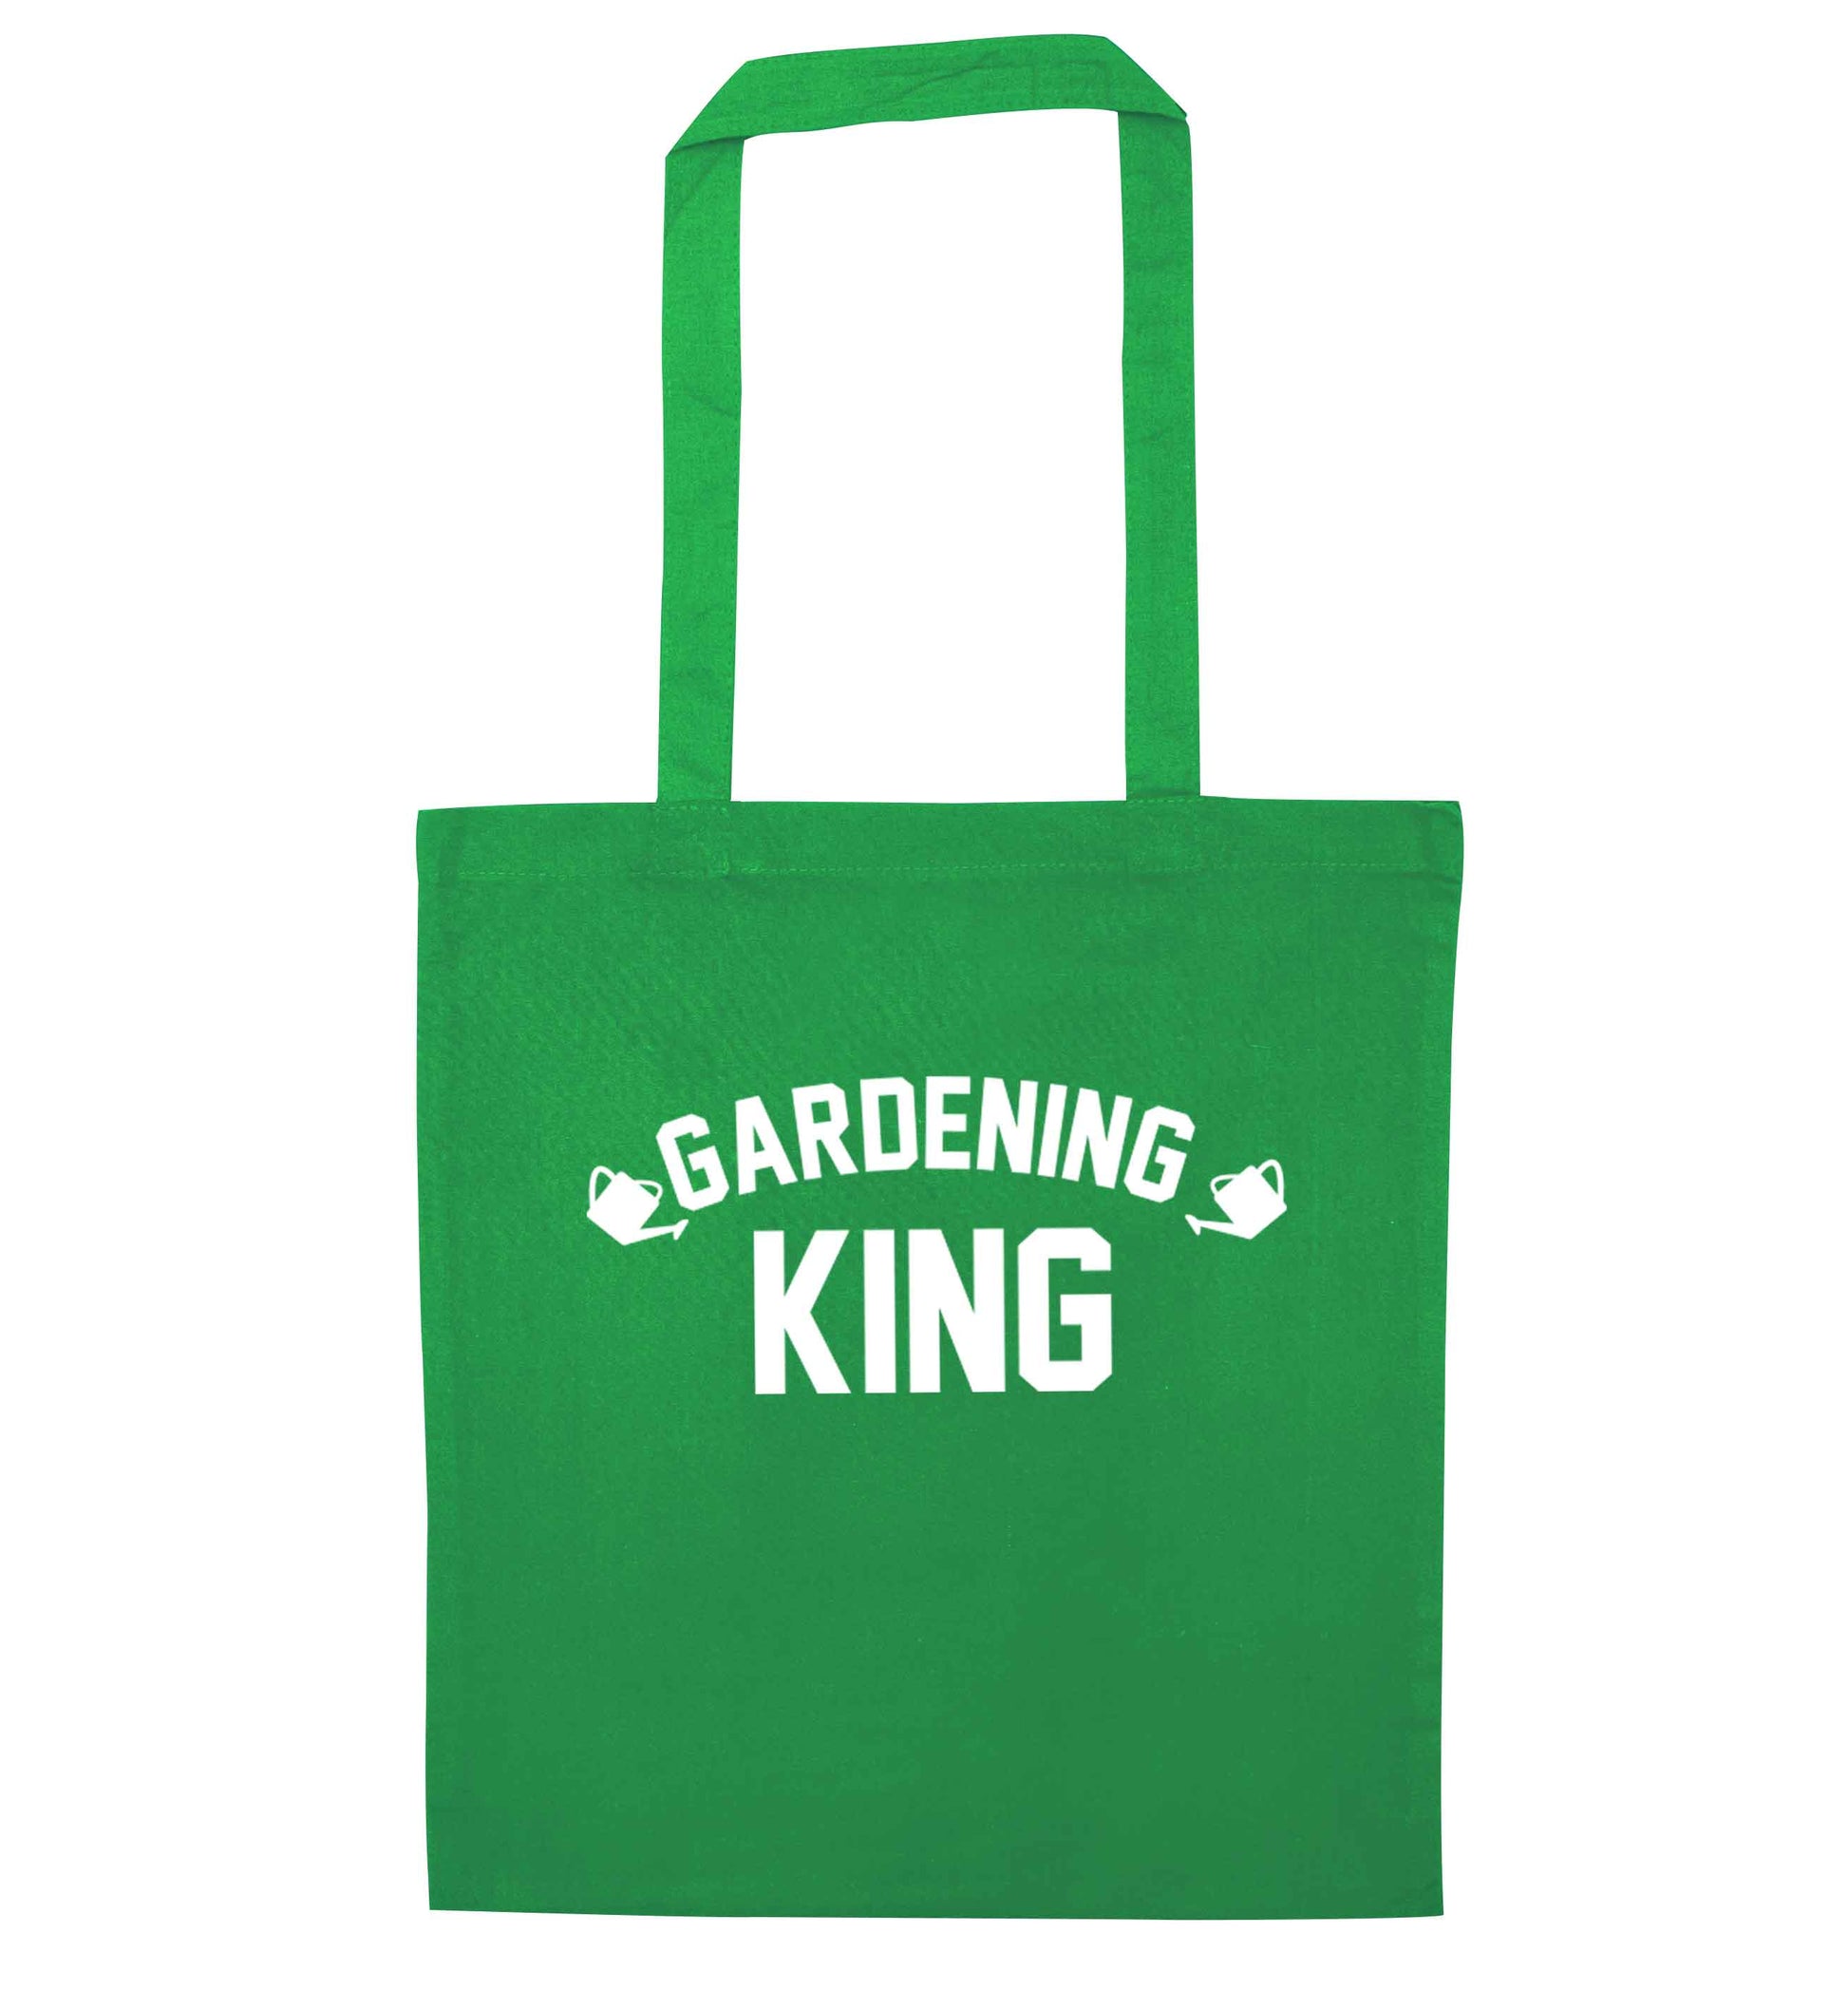 Gardening king green tote bag